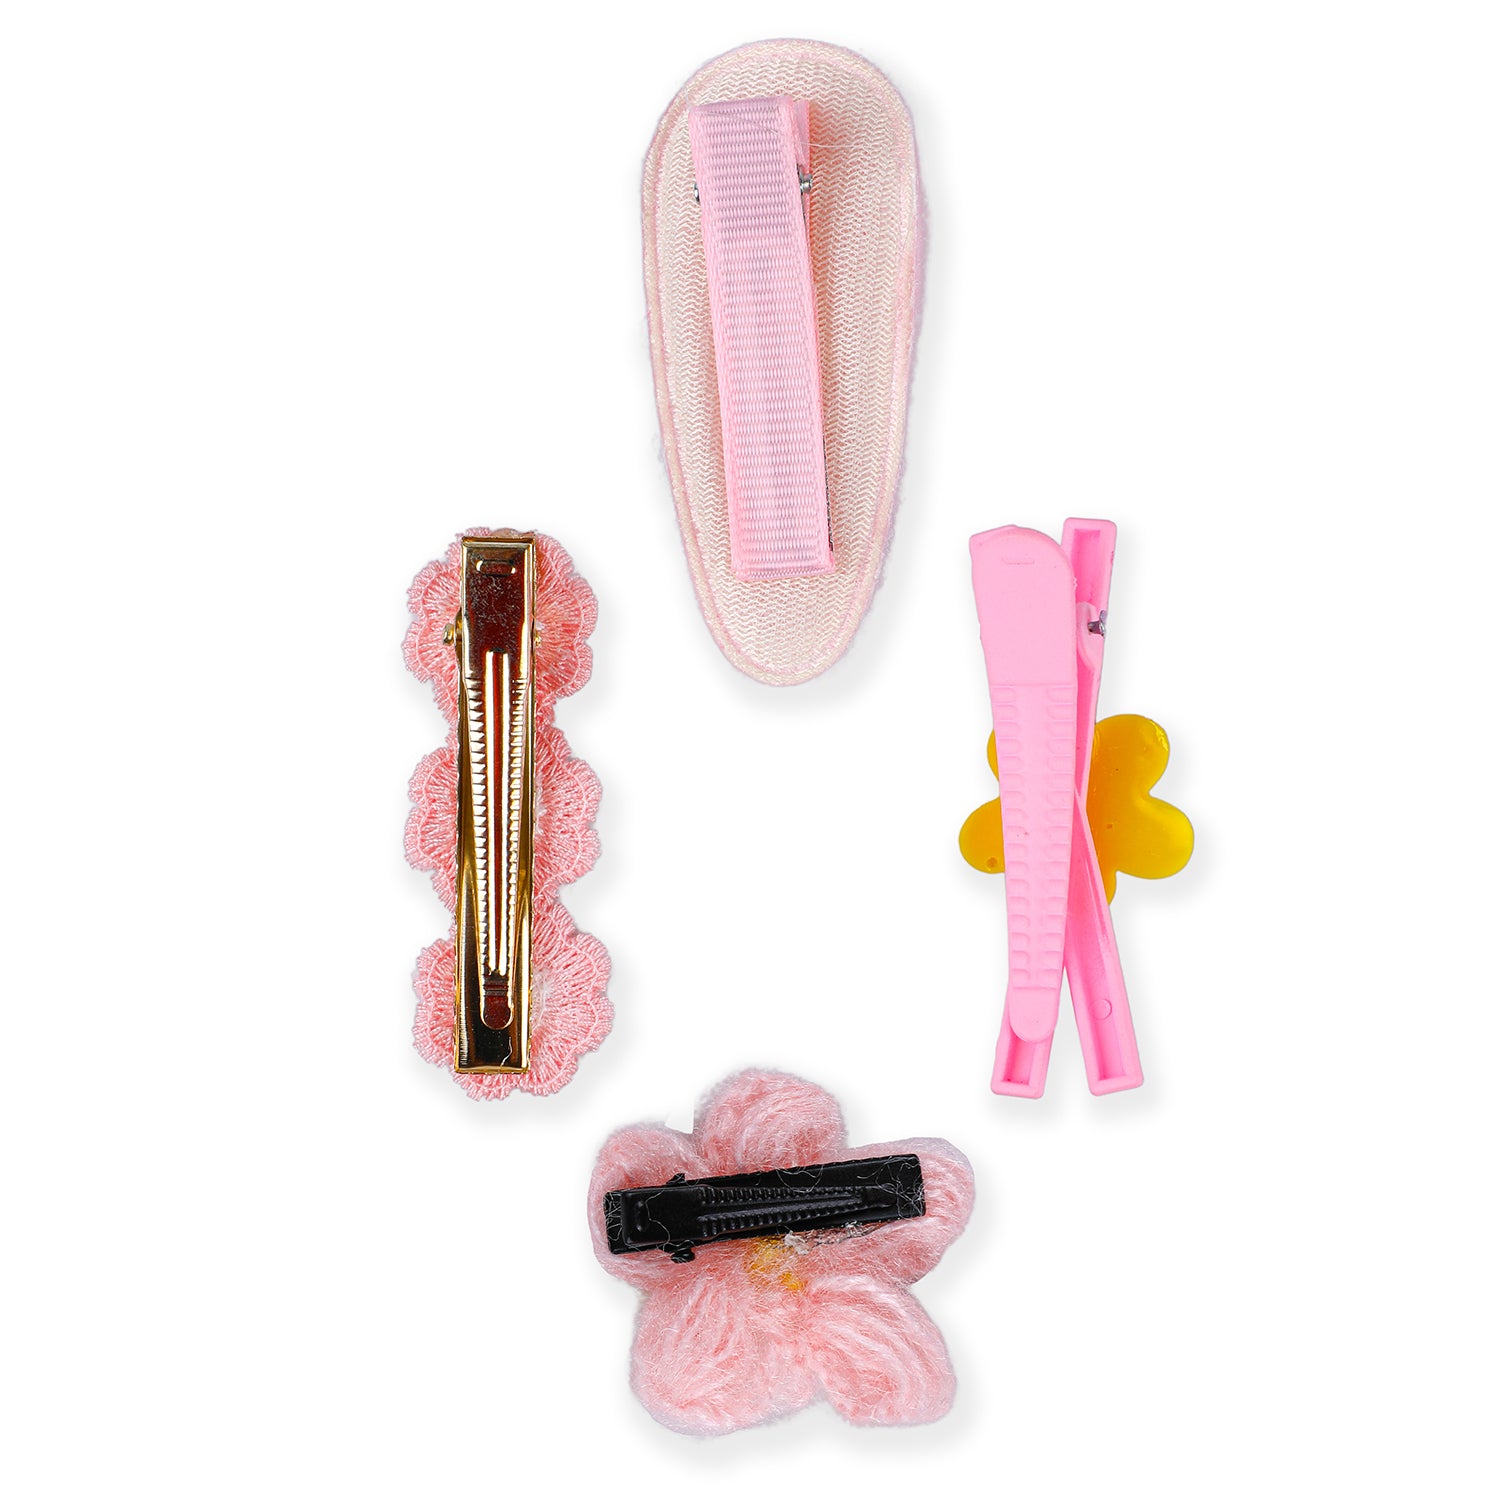 Thalia Floral Hair Clips Set 9 Pcs - Pink - Baby Moo